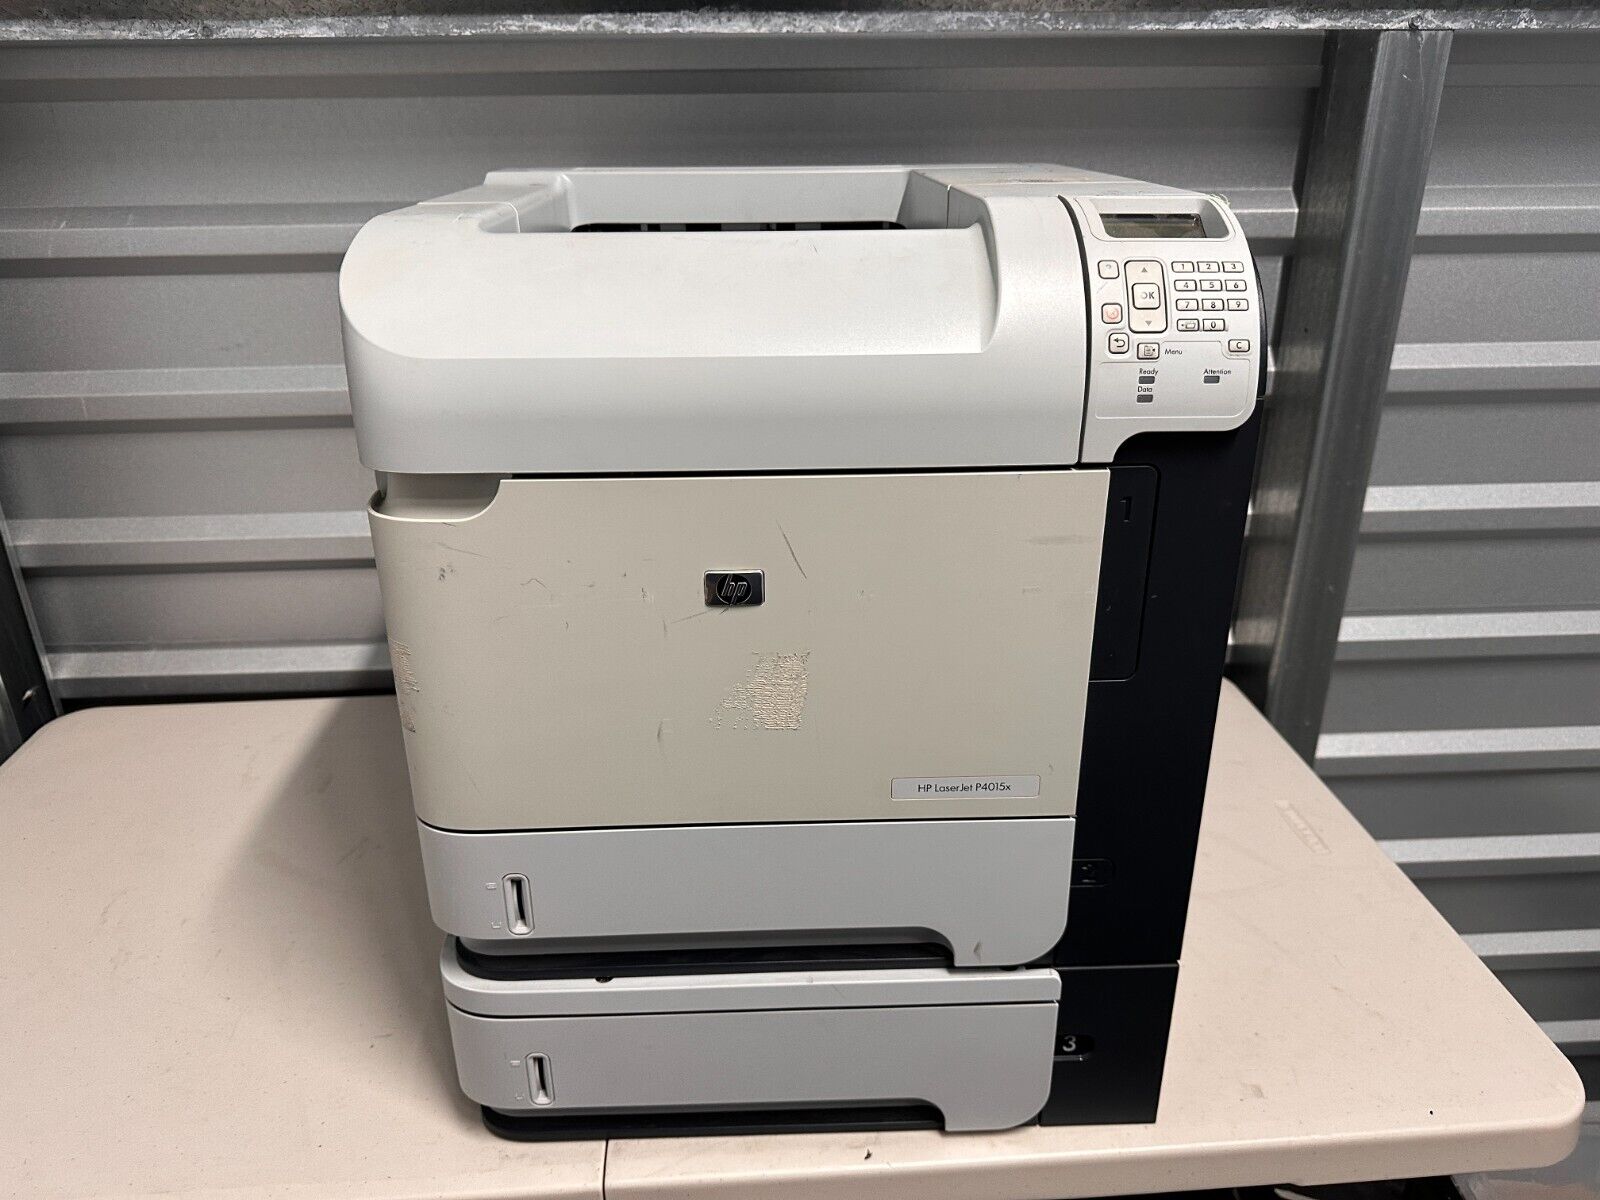 HP LaserJet P4015x Monochrome Printer